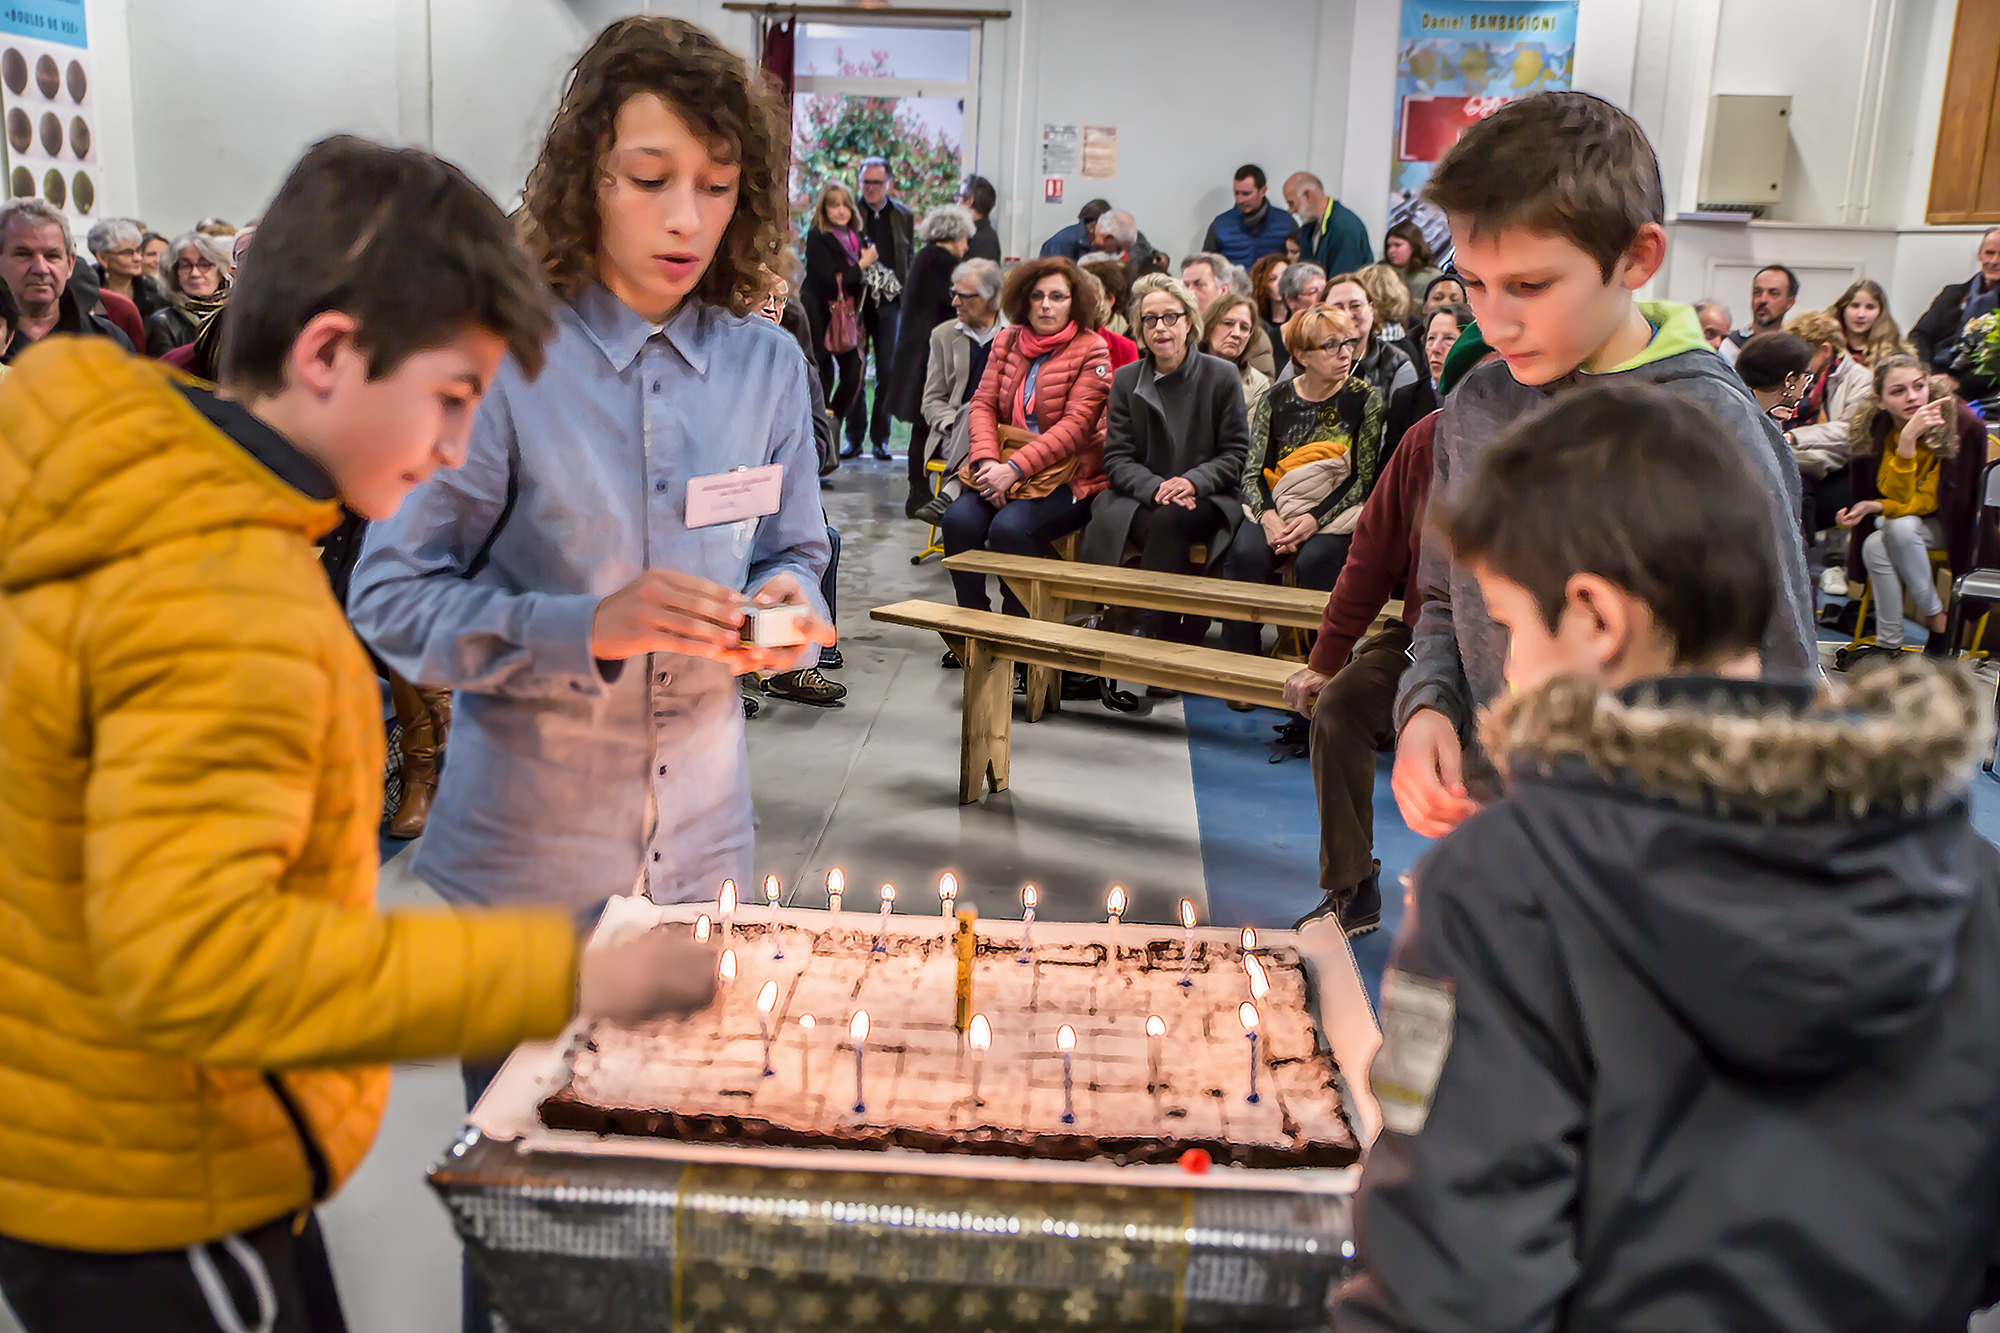 18 Les enfants allument les bougies du gâteau 1bis 100318.jpg